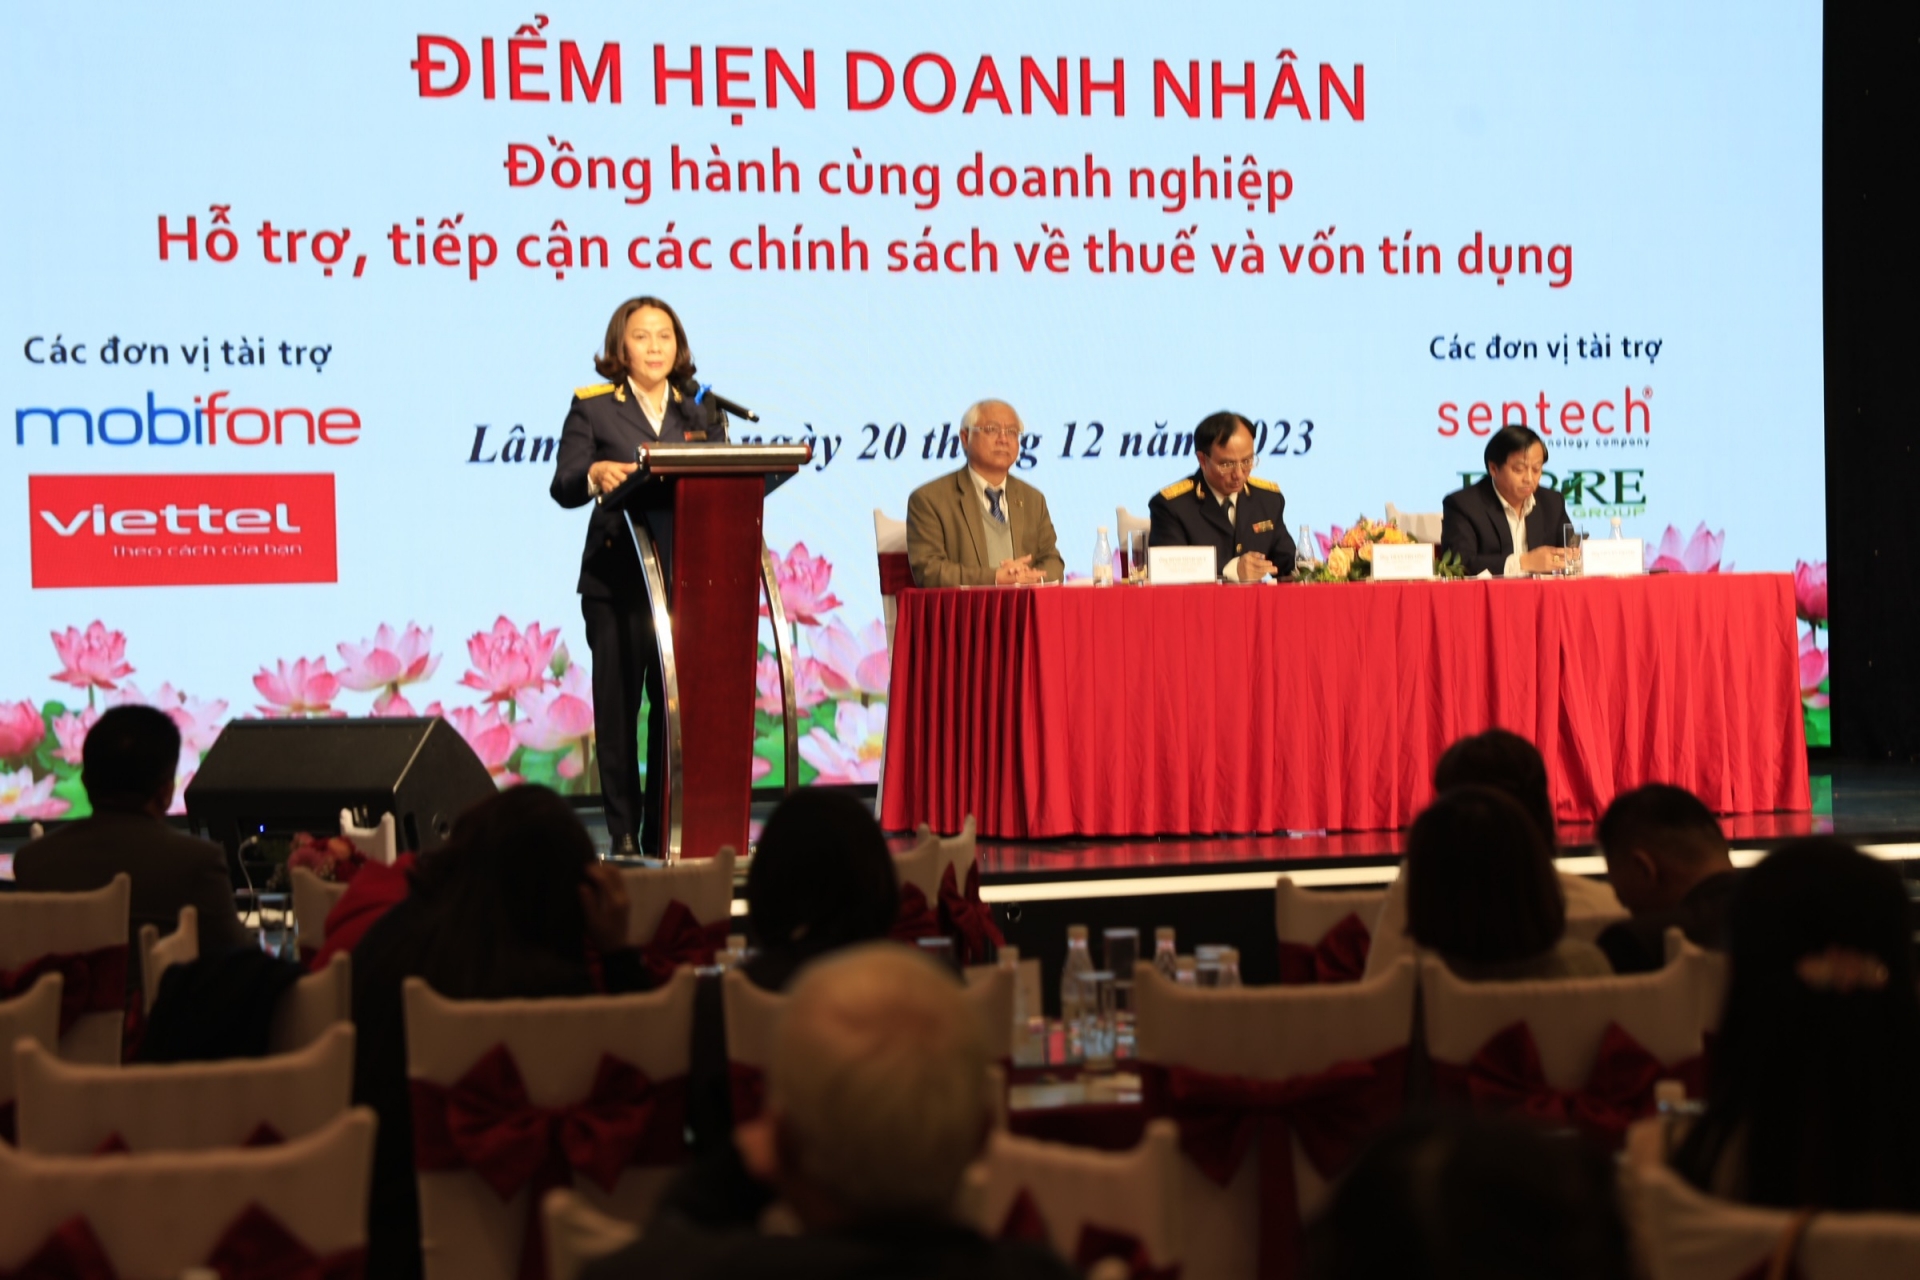 Bà Nguyễn Thị Tuyết Ánh - Phó Cục trưởng Cục Thuế tỉnh Lâm Đồng hỗ trợ giải đáp vướng mắc của doanh nghiệp